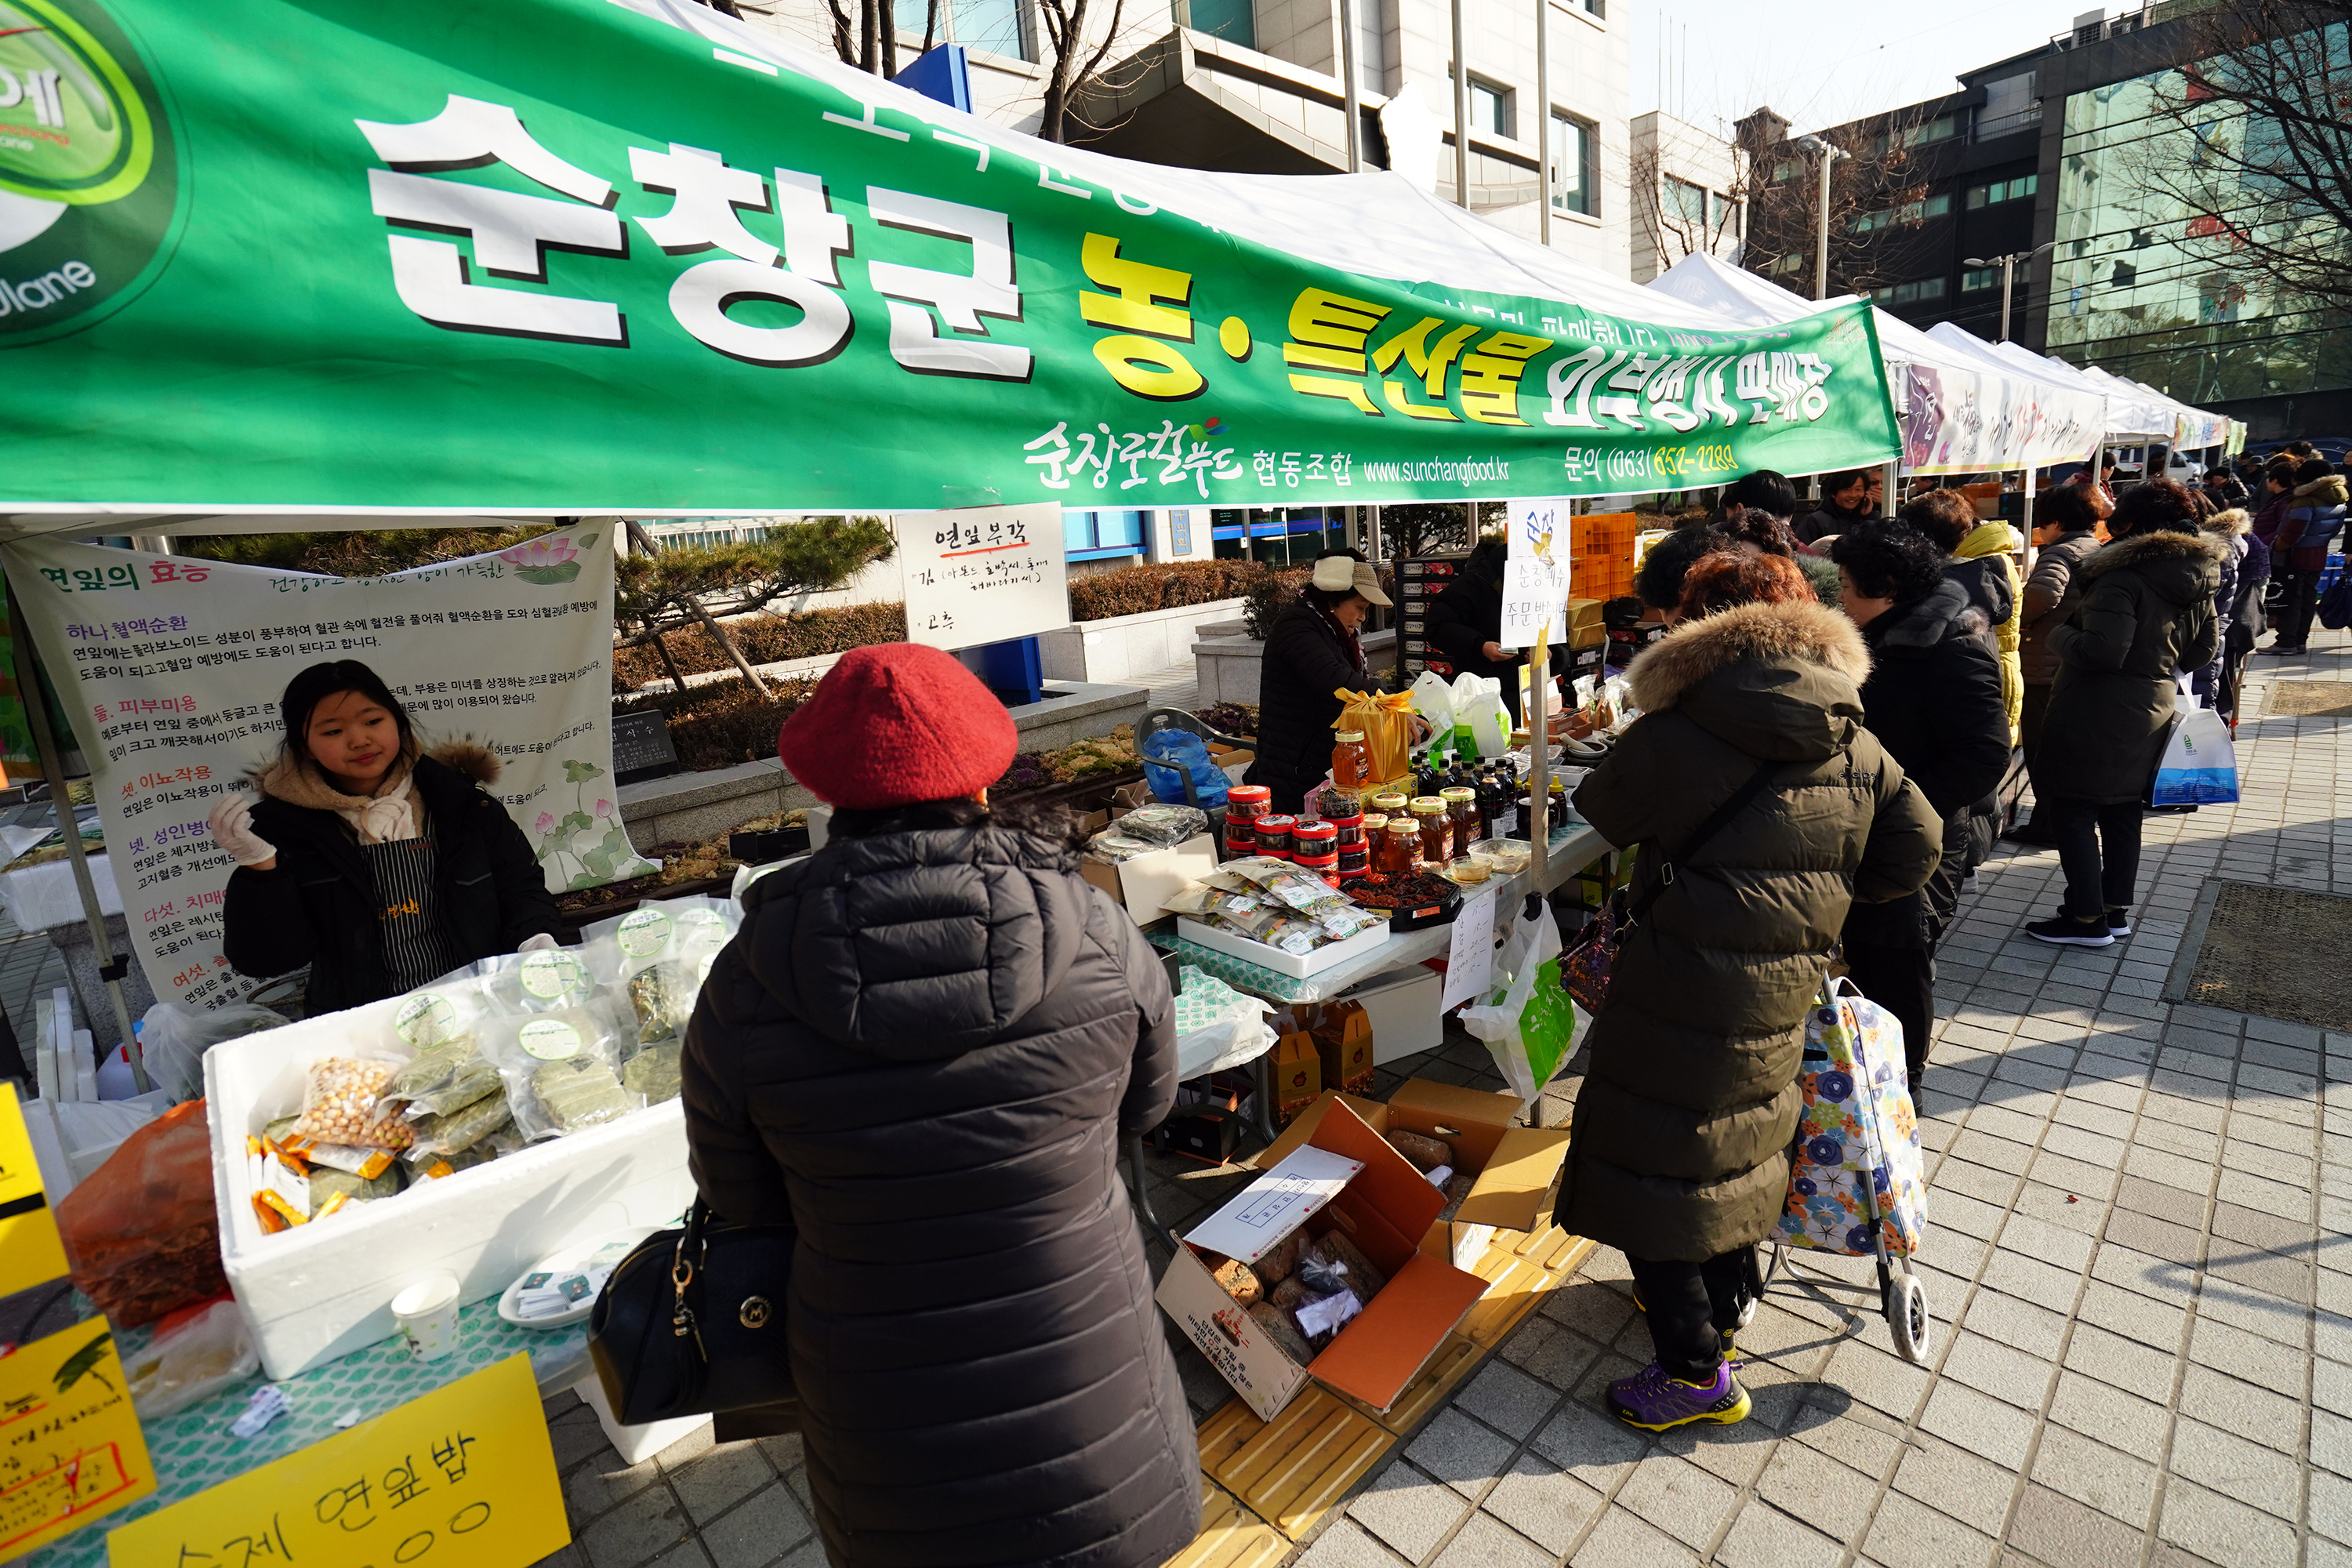 지난해 서울 동대문구가 개최한 설맞이 농수산물 직거래장터에서 주민들이 상품을 구매하고 있다.  동대문구 제공 